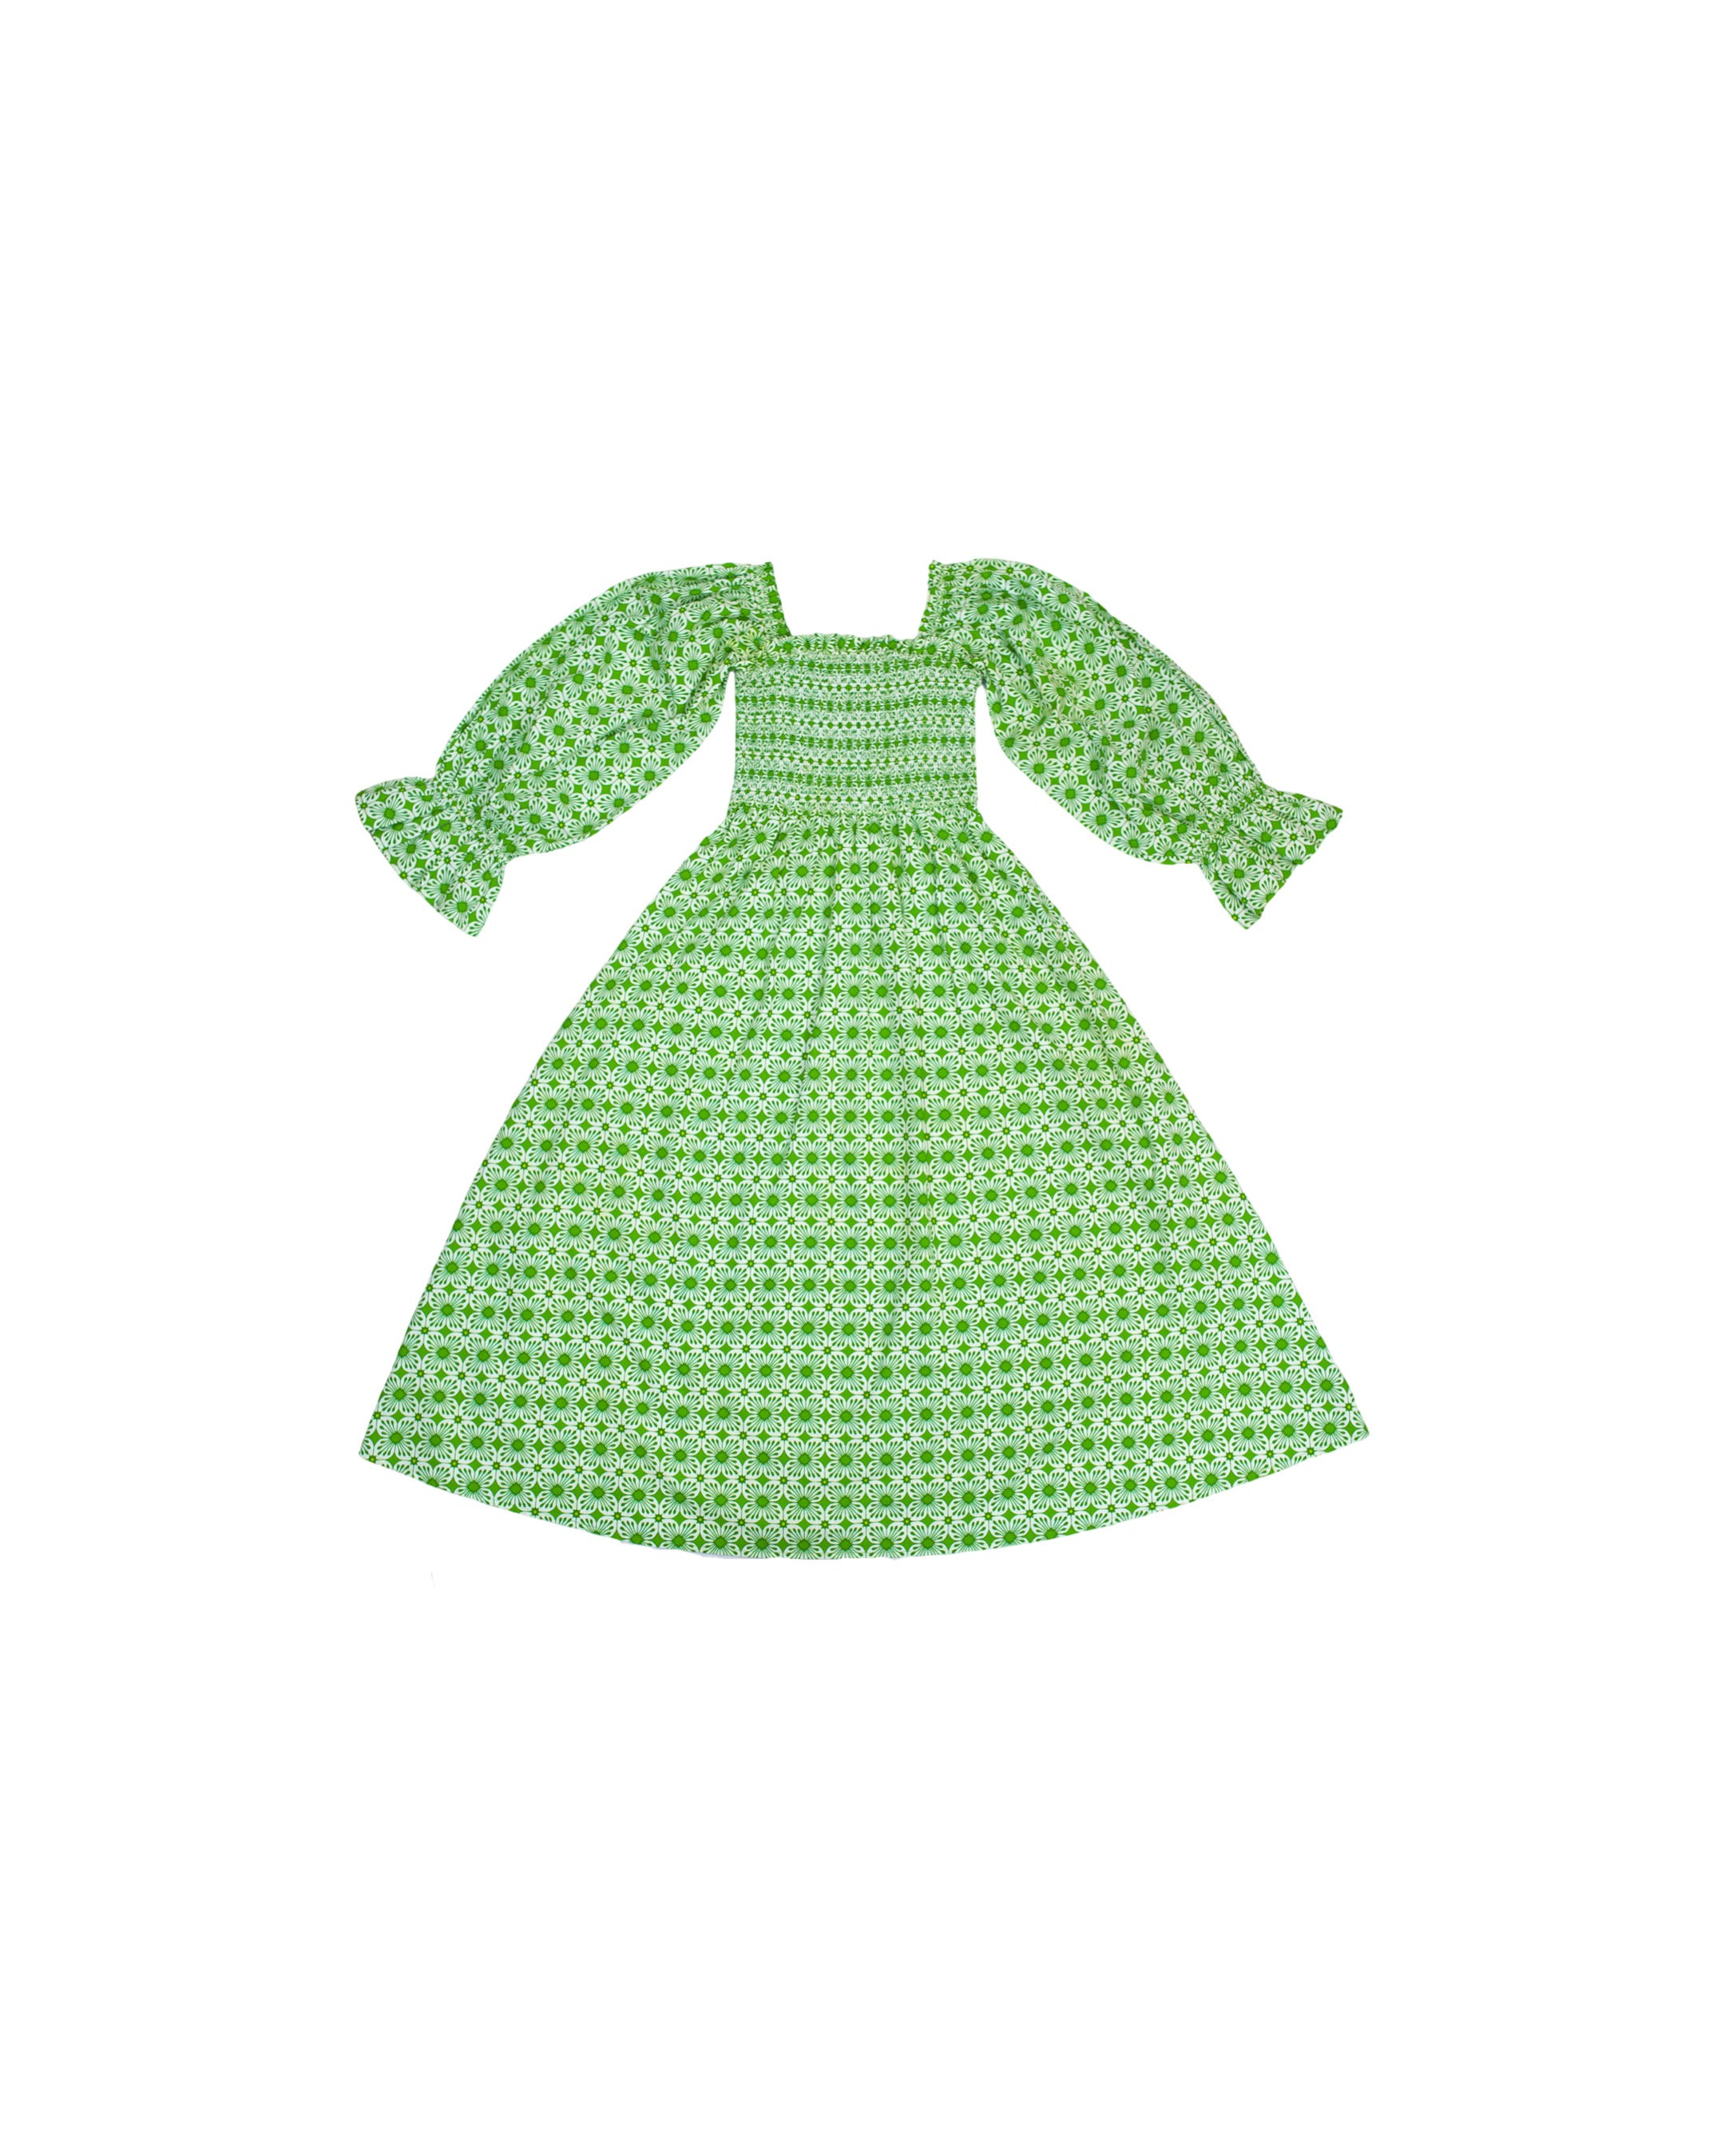 green dress clipart